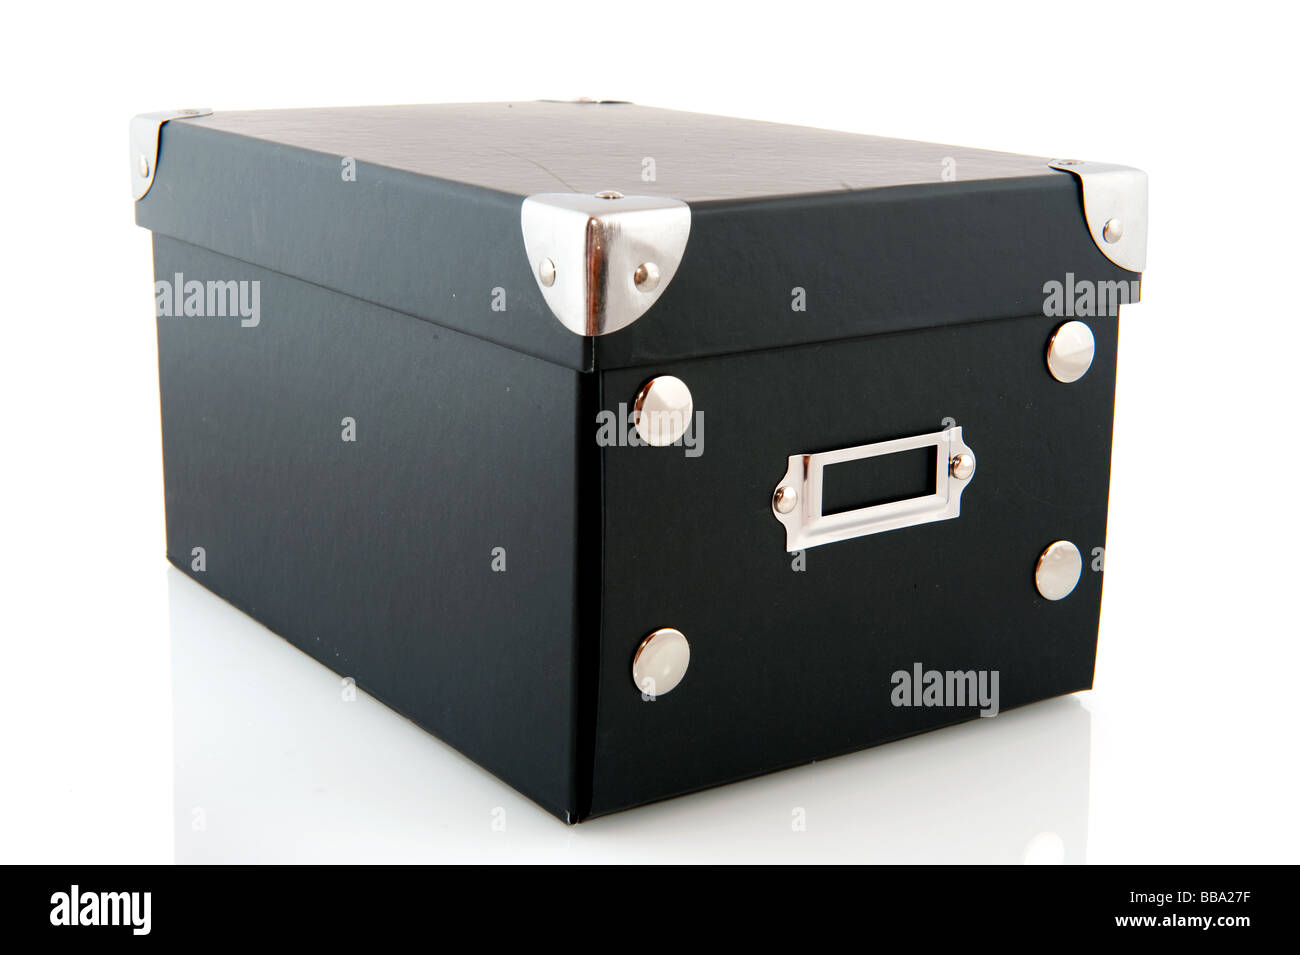 La scatola nera immagini e fotografie stock ad alta risoluzione - Alamy